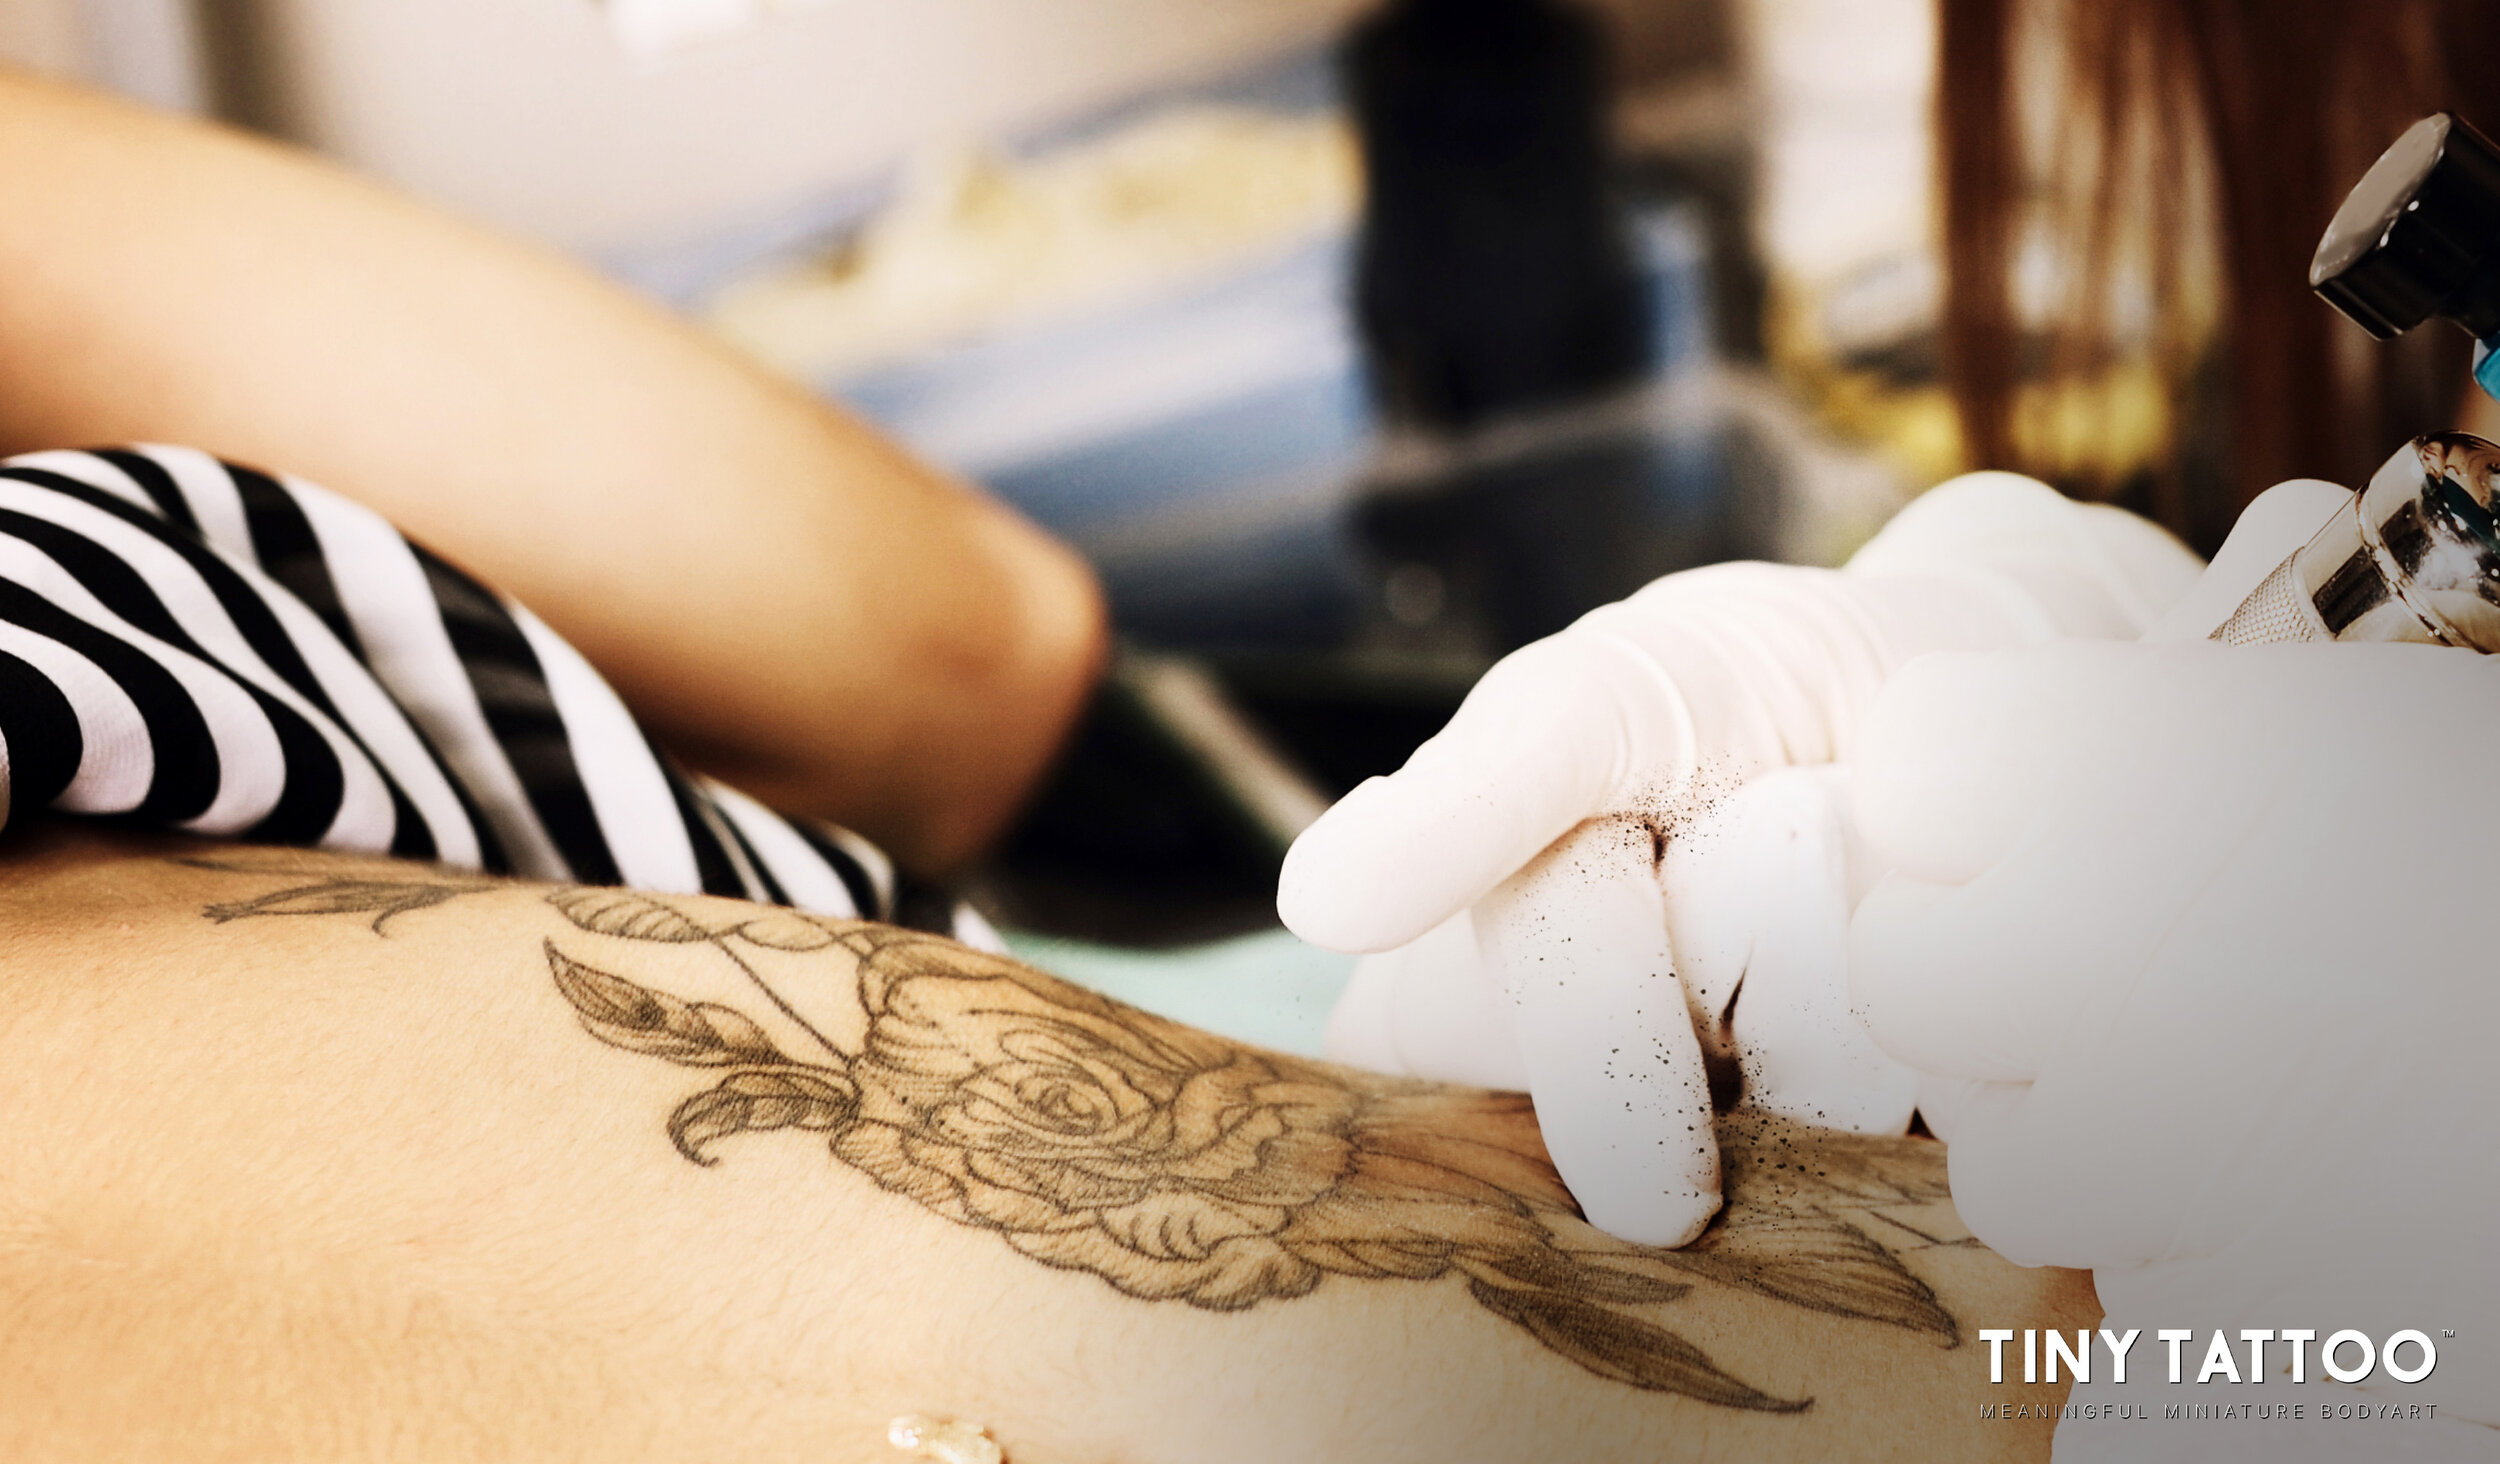 50 Best Small Tattoo Designs  Minimalist Tattoo